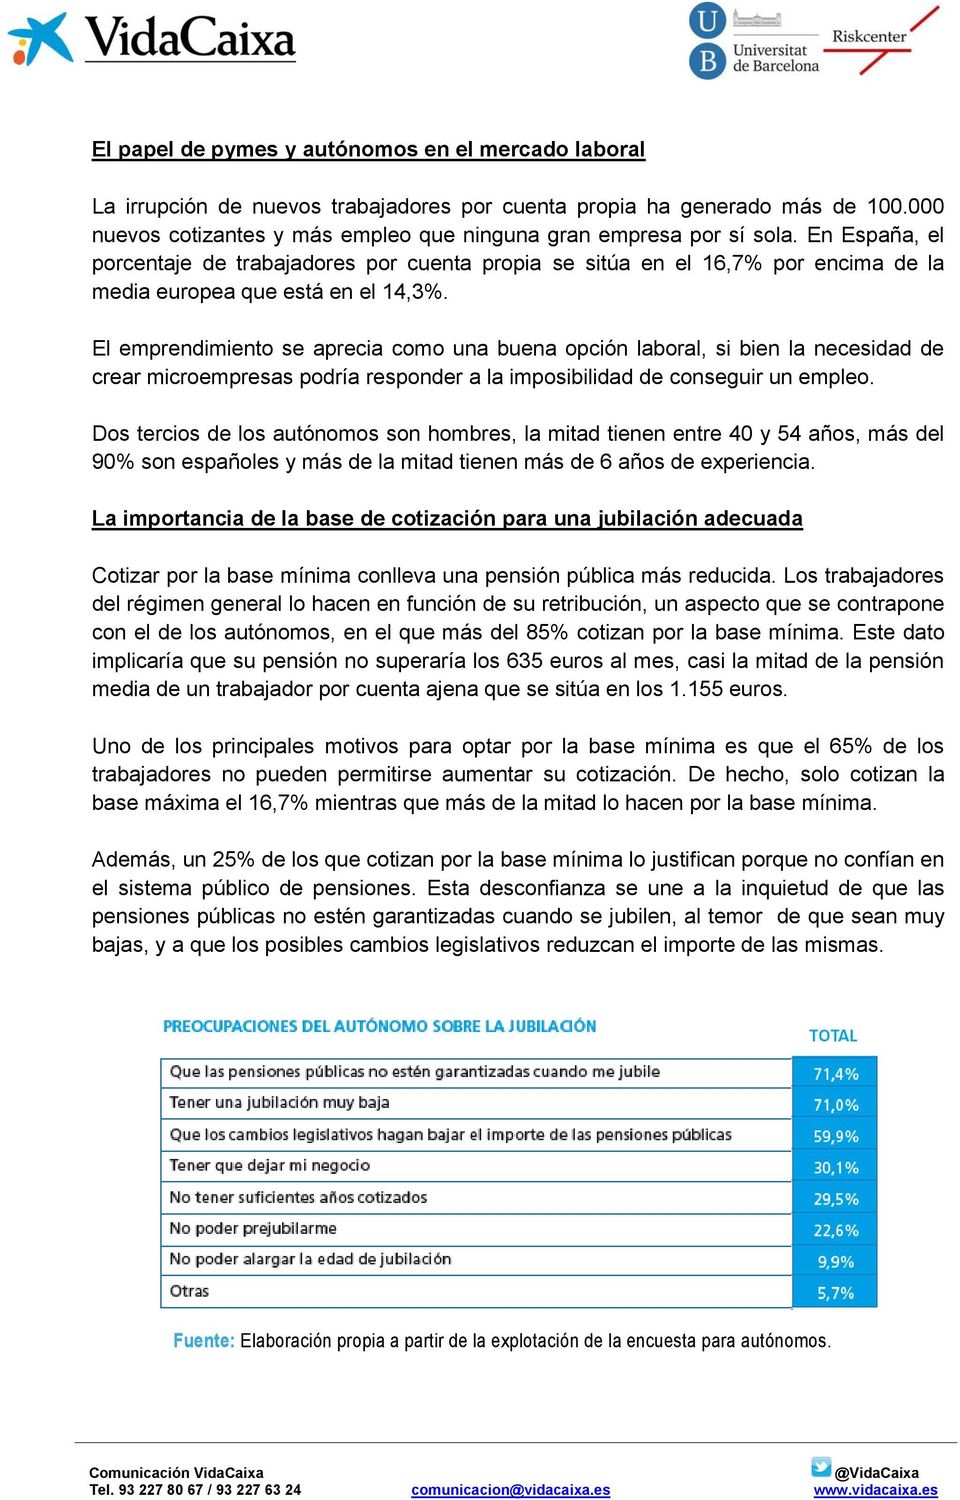 En España, el porcentaje de trabajadores por cuenta propia se sitúa en el 16,7% por encima de la media europea que está en el 14,3%.